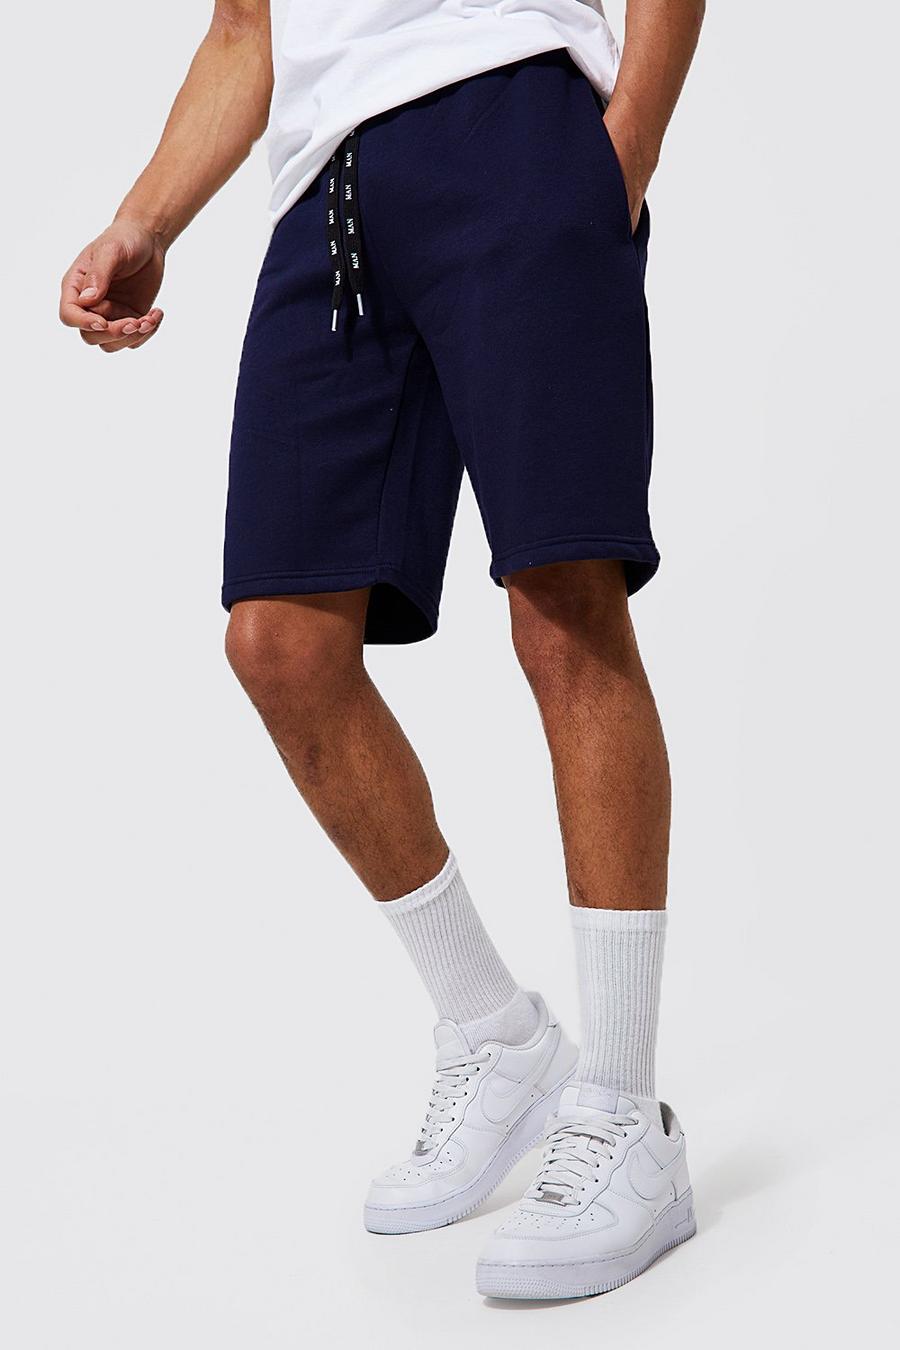 Pantalón corto Tall de tela jersey MAN con cordón elástico, Navy azul marino